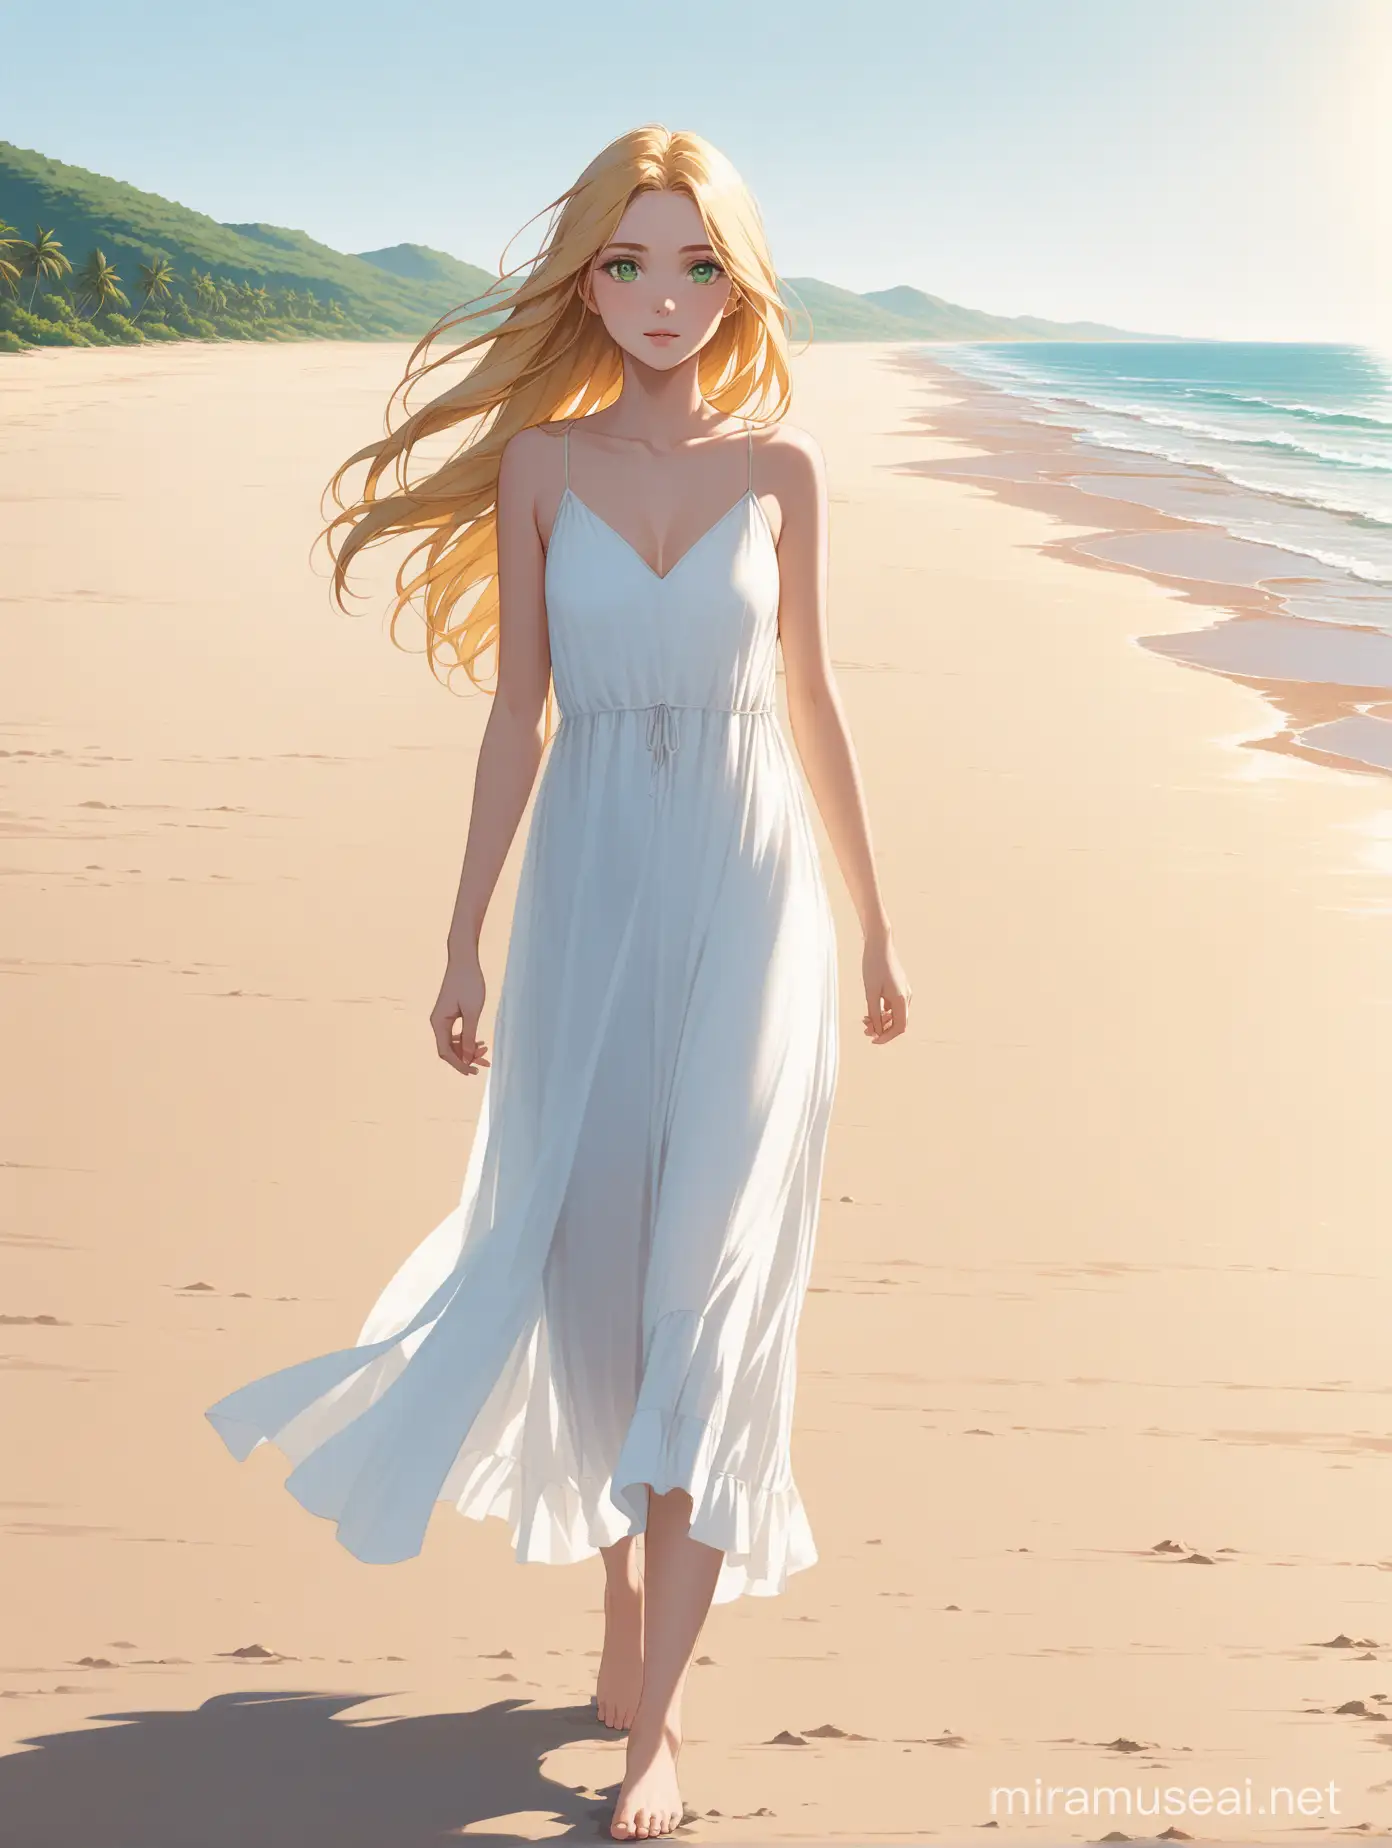 Mujer joven, de cabellos dorados, largos y sueltos, con grandes ojos verdes, camina por una playa desierta, vestida con un liviano vestido de color blanco, con los pies descalzos. 